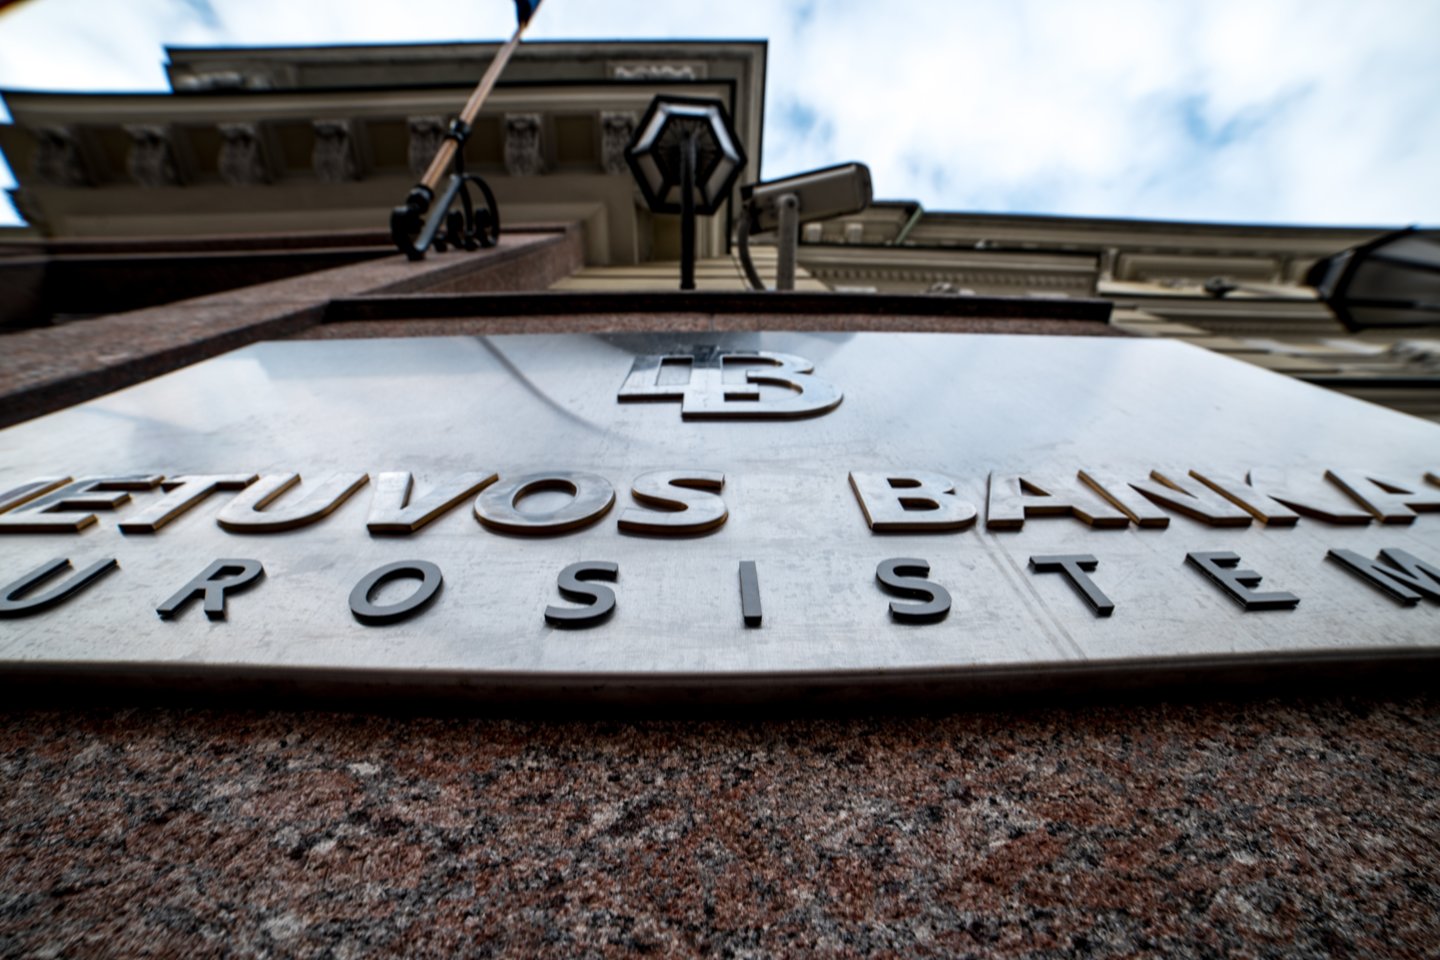 Per pirmąjį pusmetį bankuose laikomų indėlių suma padidėjo 2,2 mlrd. eurų (10,8 proc.) ir siekė 22,6 mlrd. eurų.<br> V.Čiavinsko nuotr. 